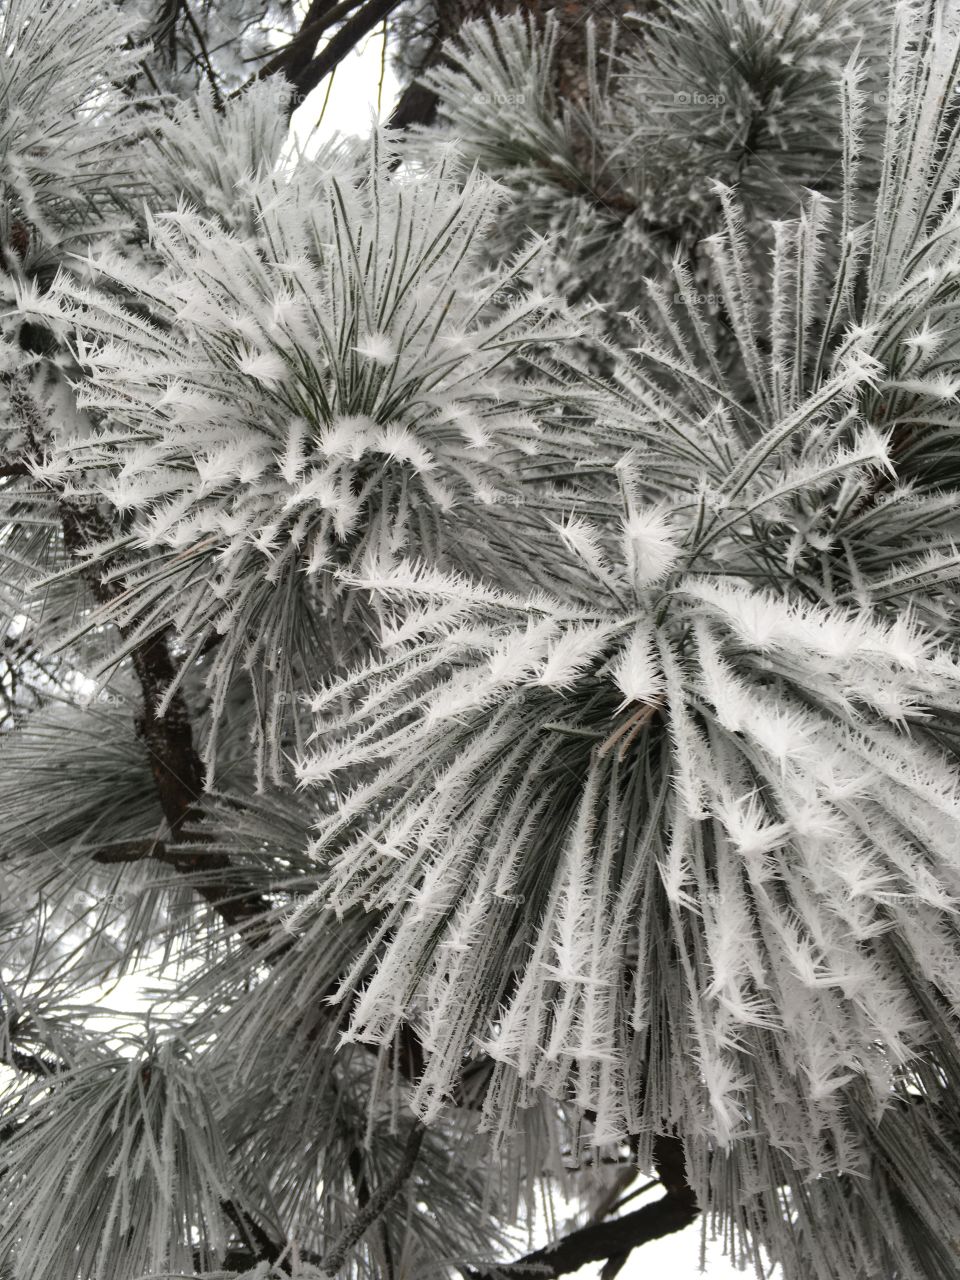 Frozen pine